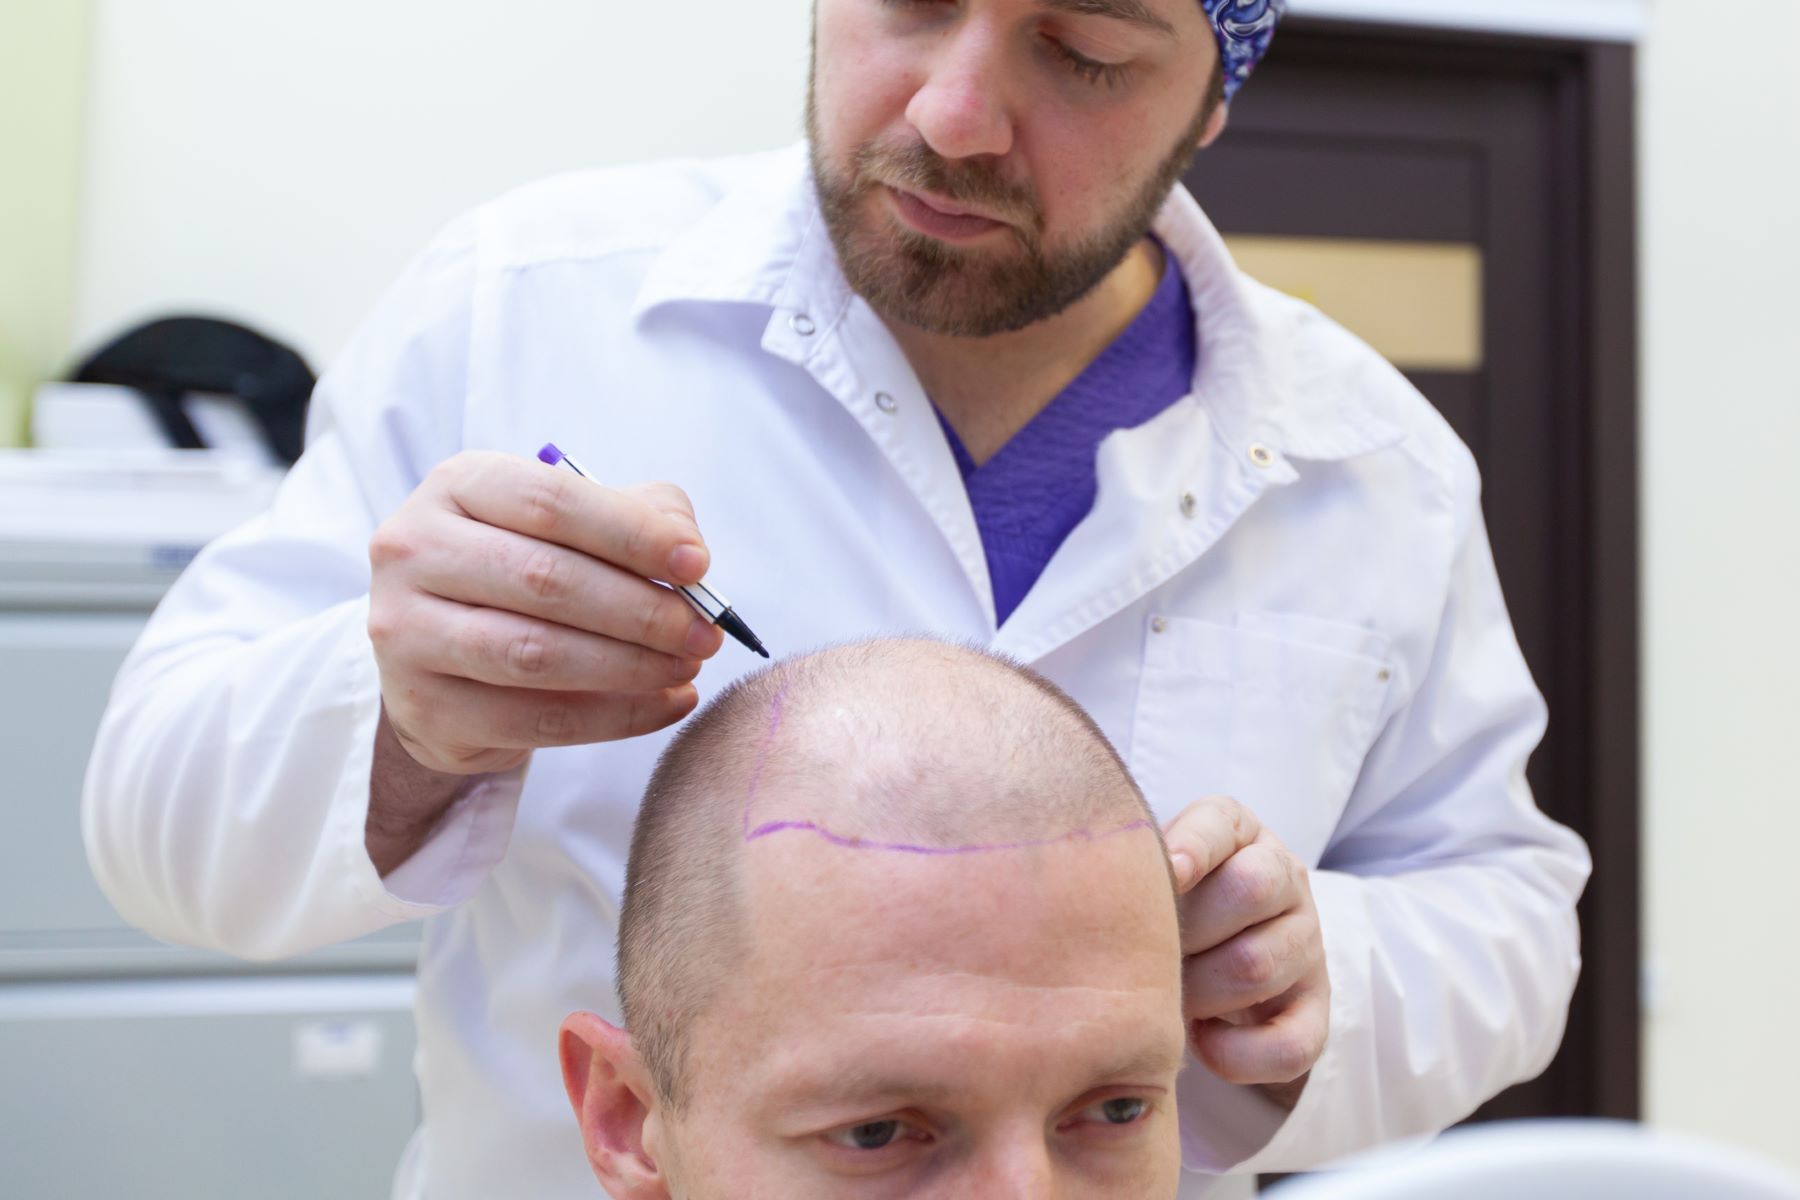 Hair loss patient having hair transplant consultation